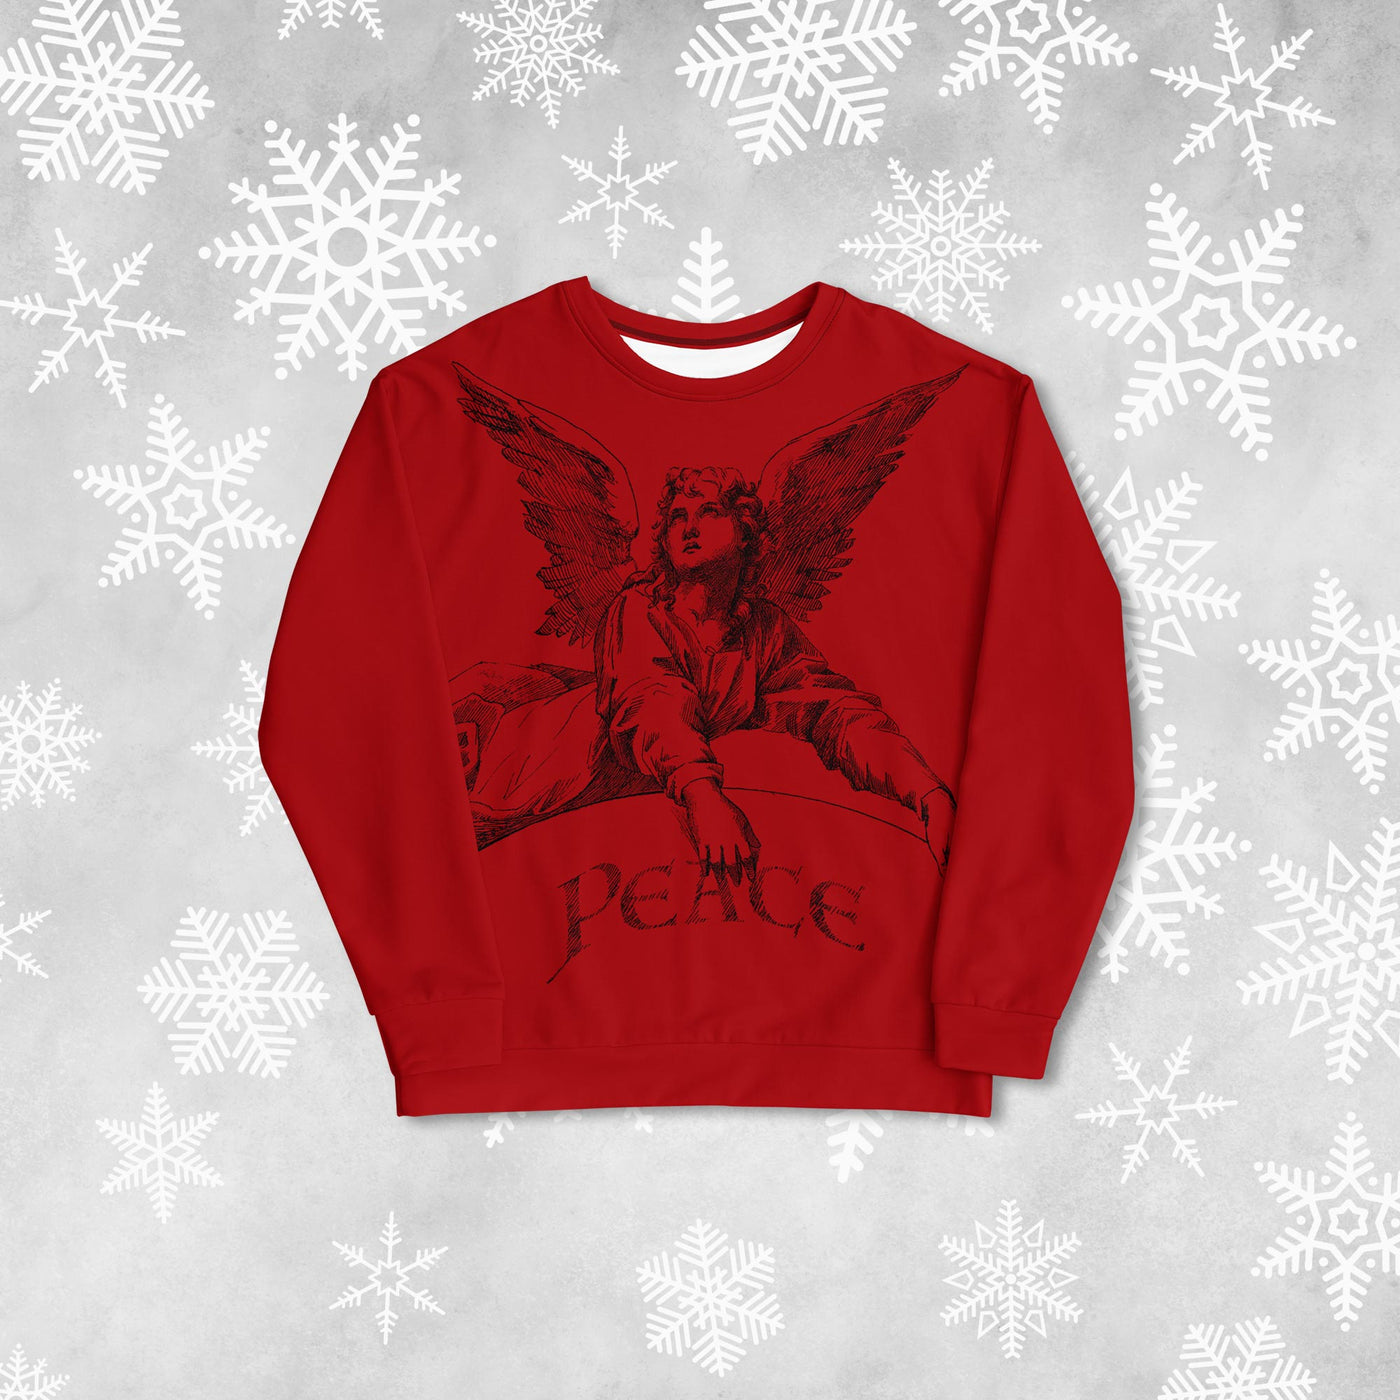 Peace Angel Sweatshirt - Black Ink